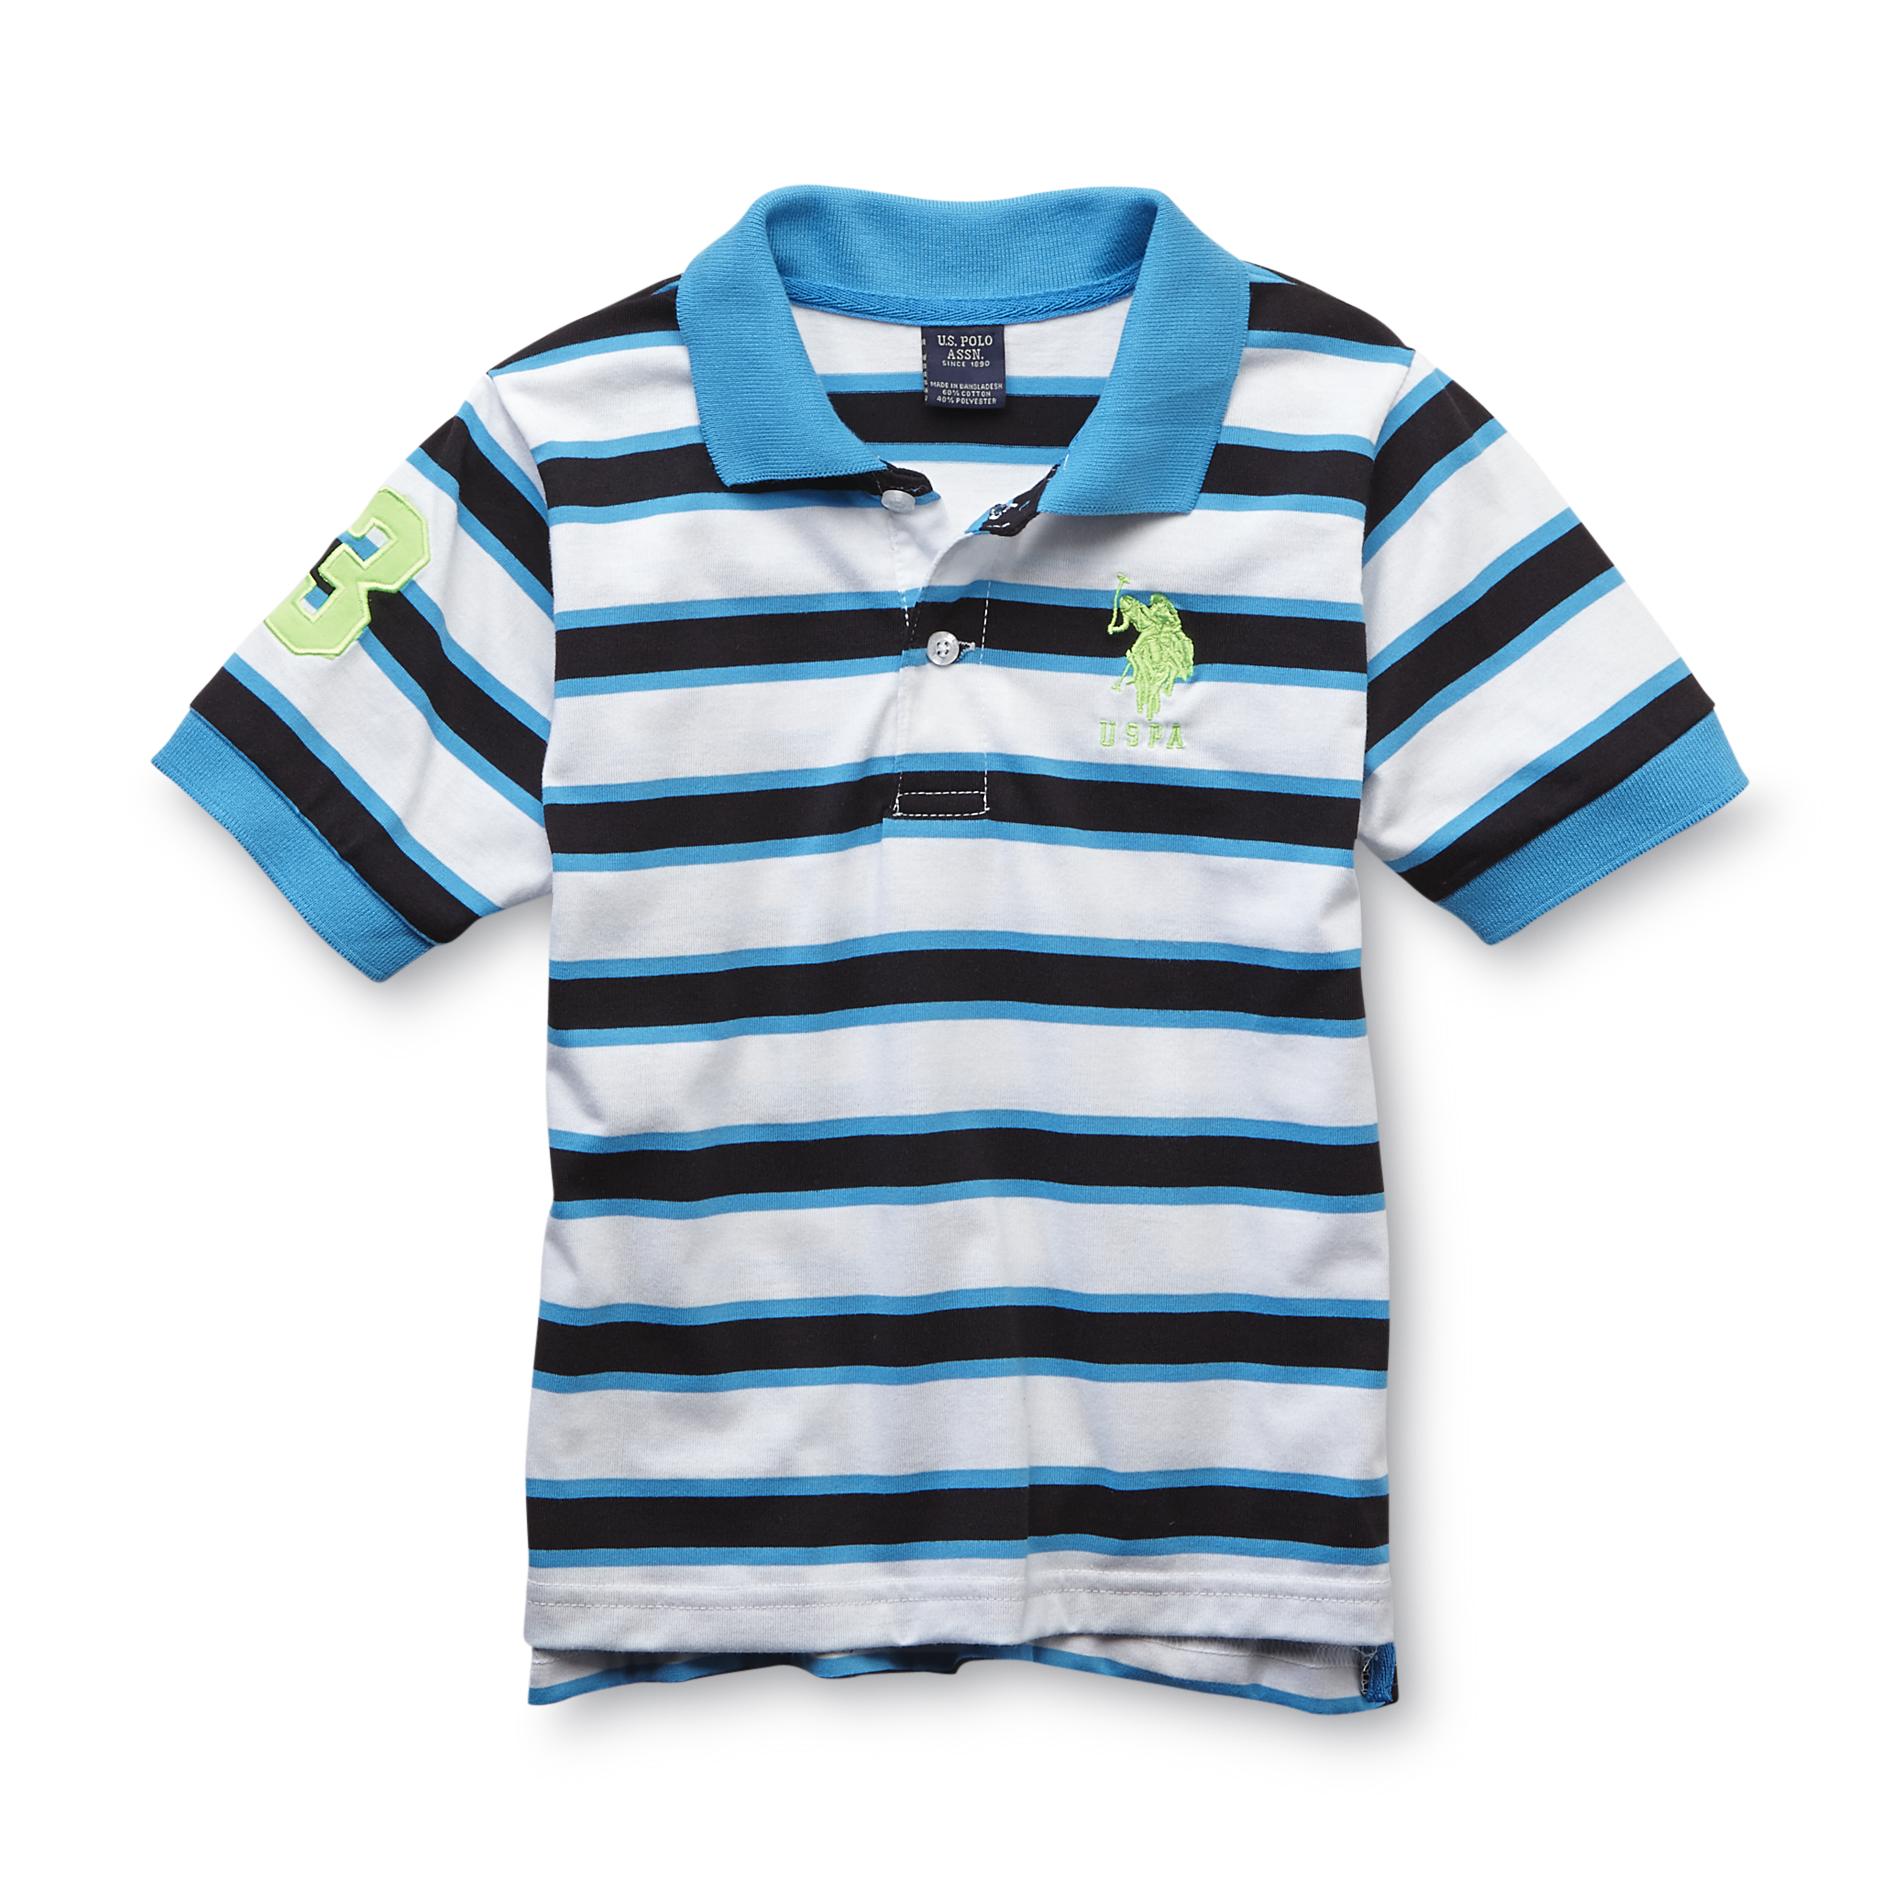 U.S. Polo Assn. Boy's Polo Shirt - Striped